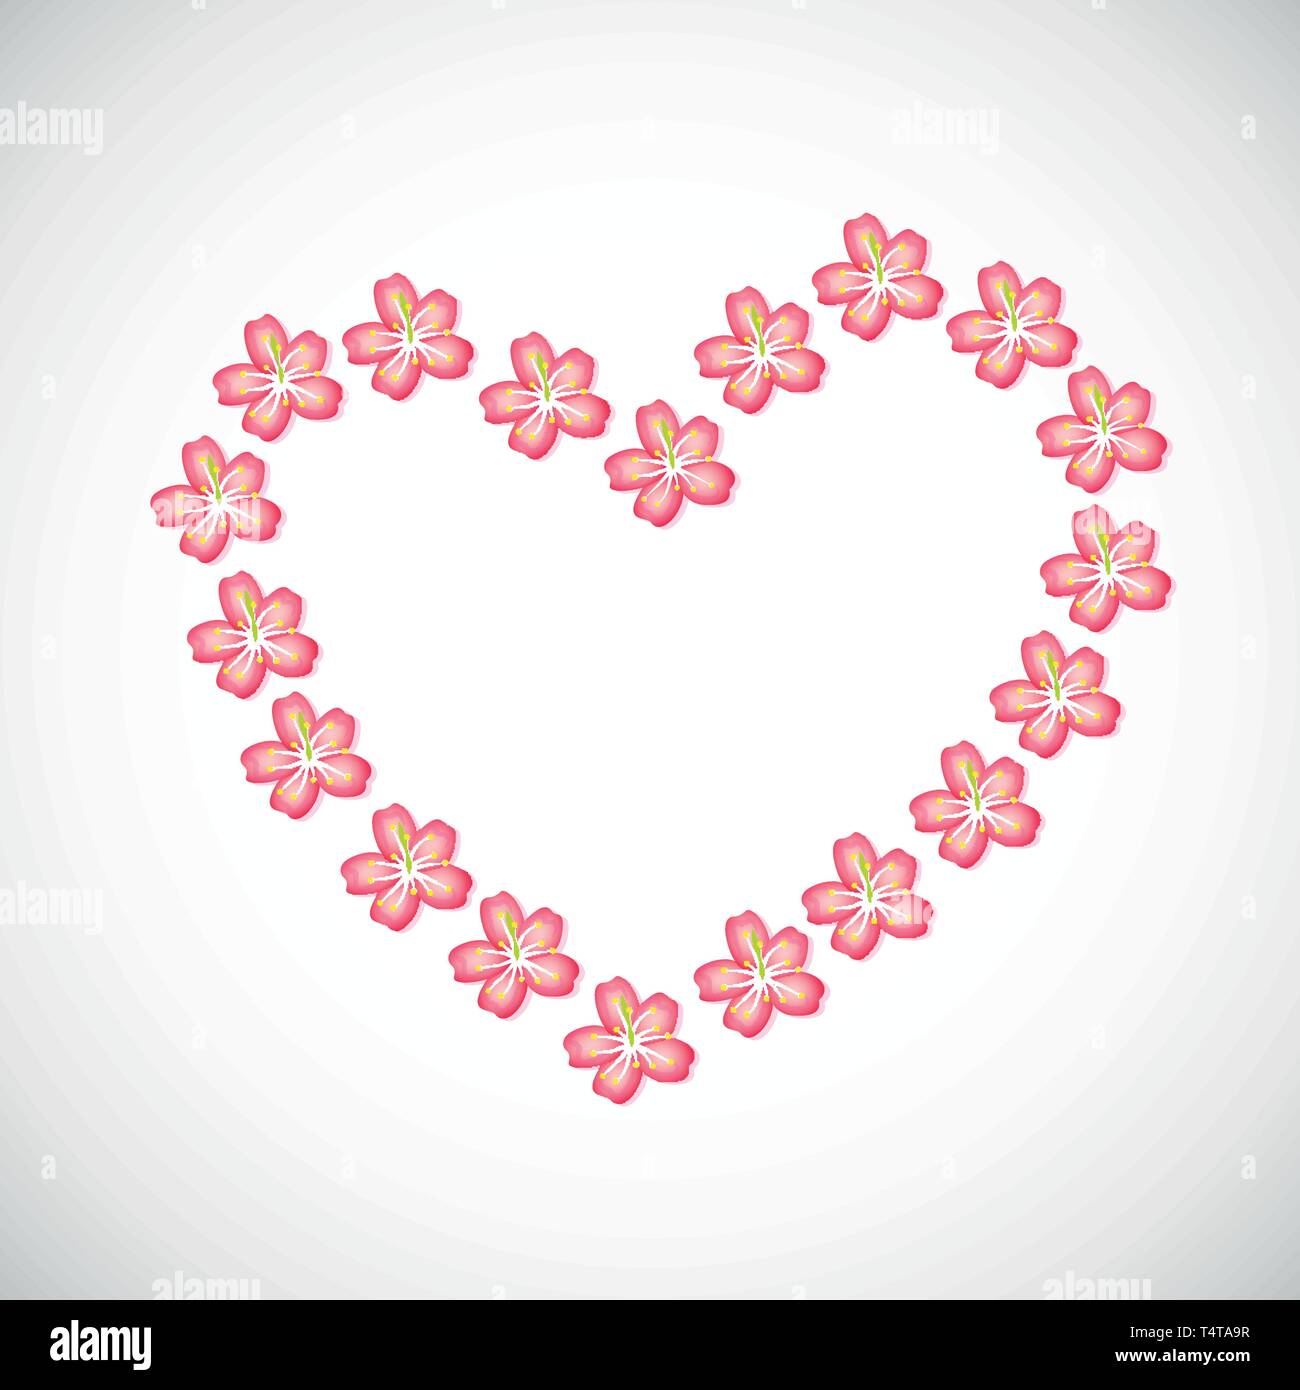 Rosa fiori di ciliegio cuore fiori di sakura illustrazione vettoriale EPS10 Illustrazione Vettoriale